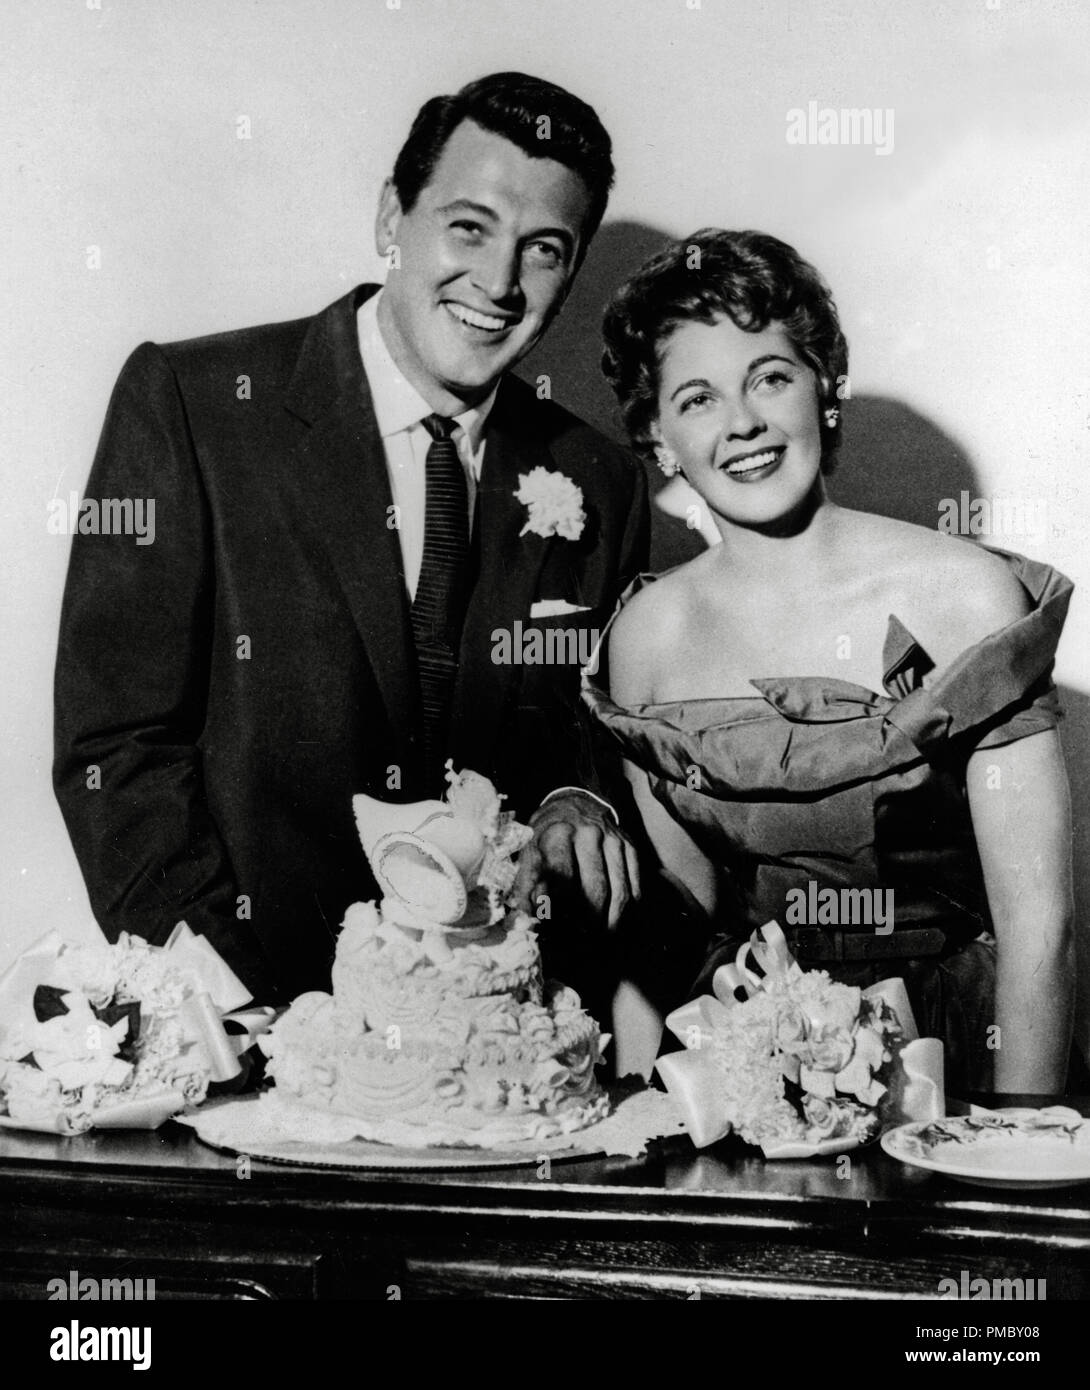 Rock Hudson y Phyllis Gates de la boda el 9 de noviembre de 1955 Archivo de referencia # 33300 201tha Foto de stock